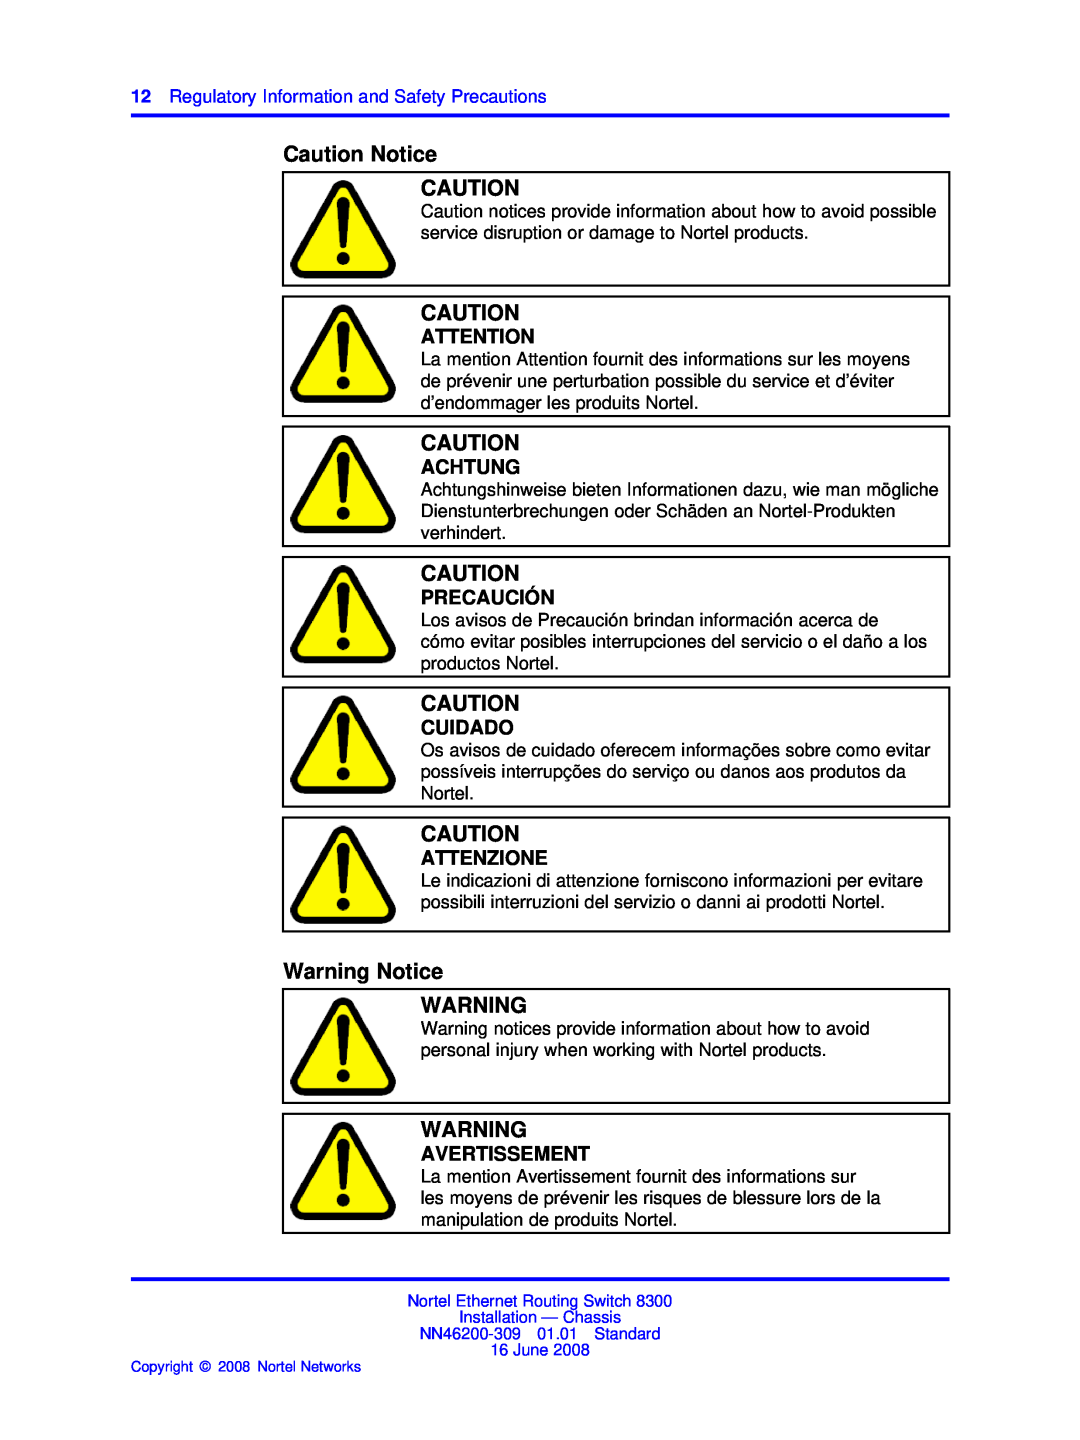 Nortel Networks 8310, 8306 manual Caution Notice, Warning Notice, Achtung, Precaución, Cuidado, Attenzione, Avertissement 